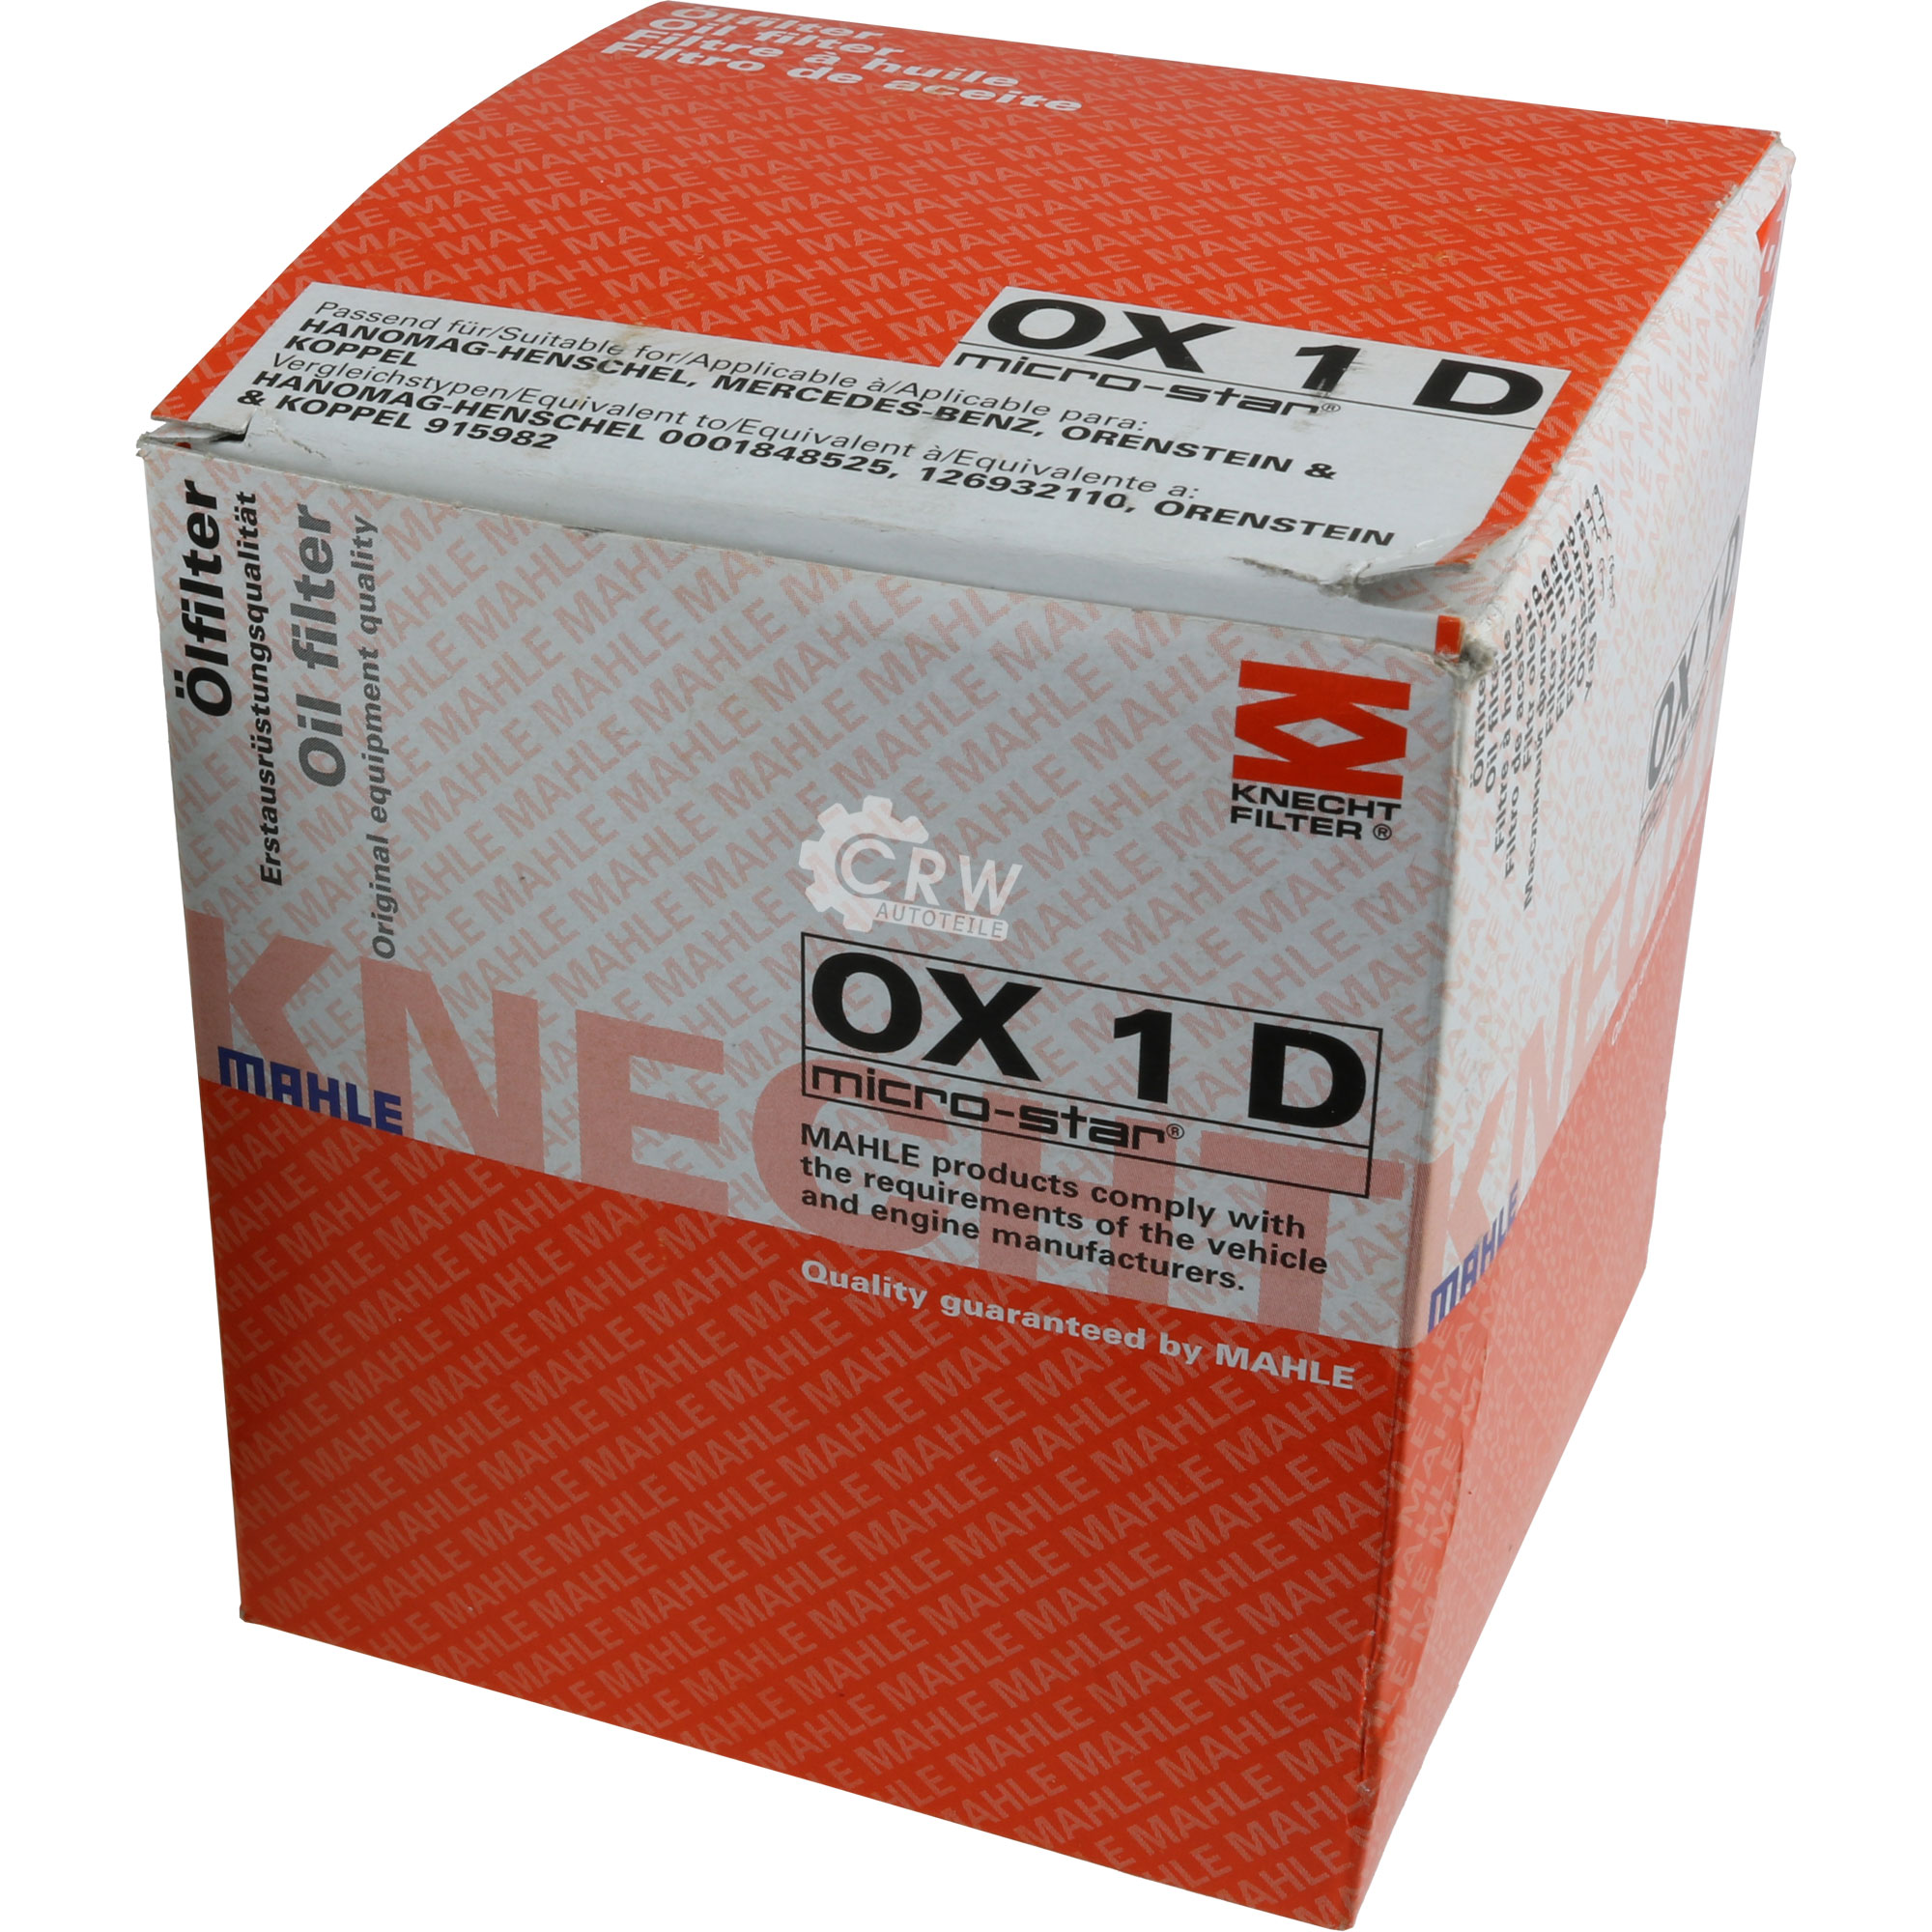 KNECHT Ölfilter OX 1D